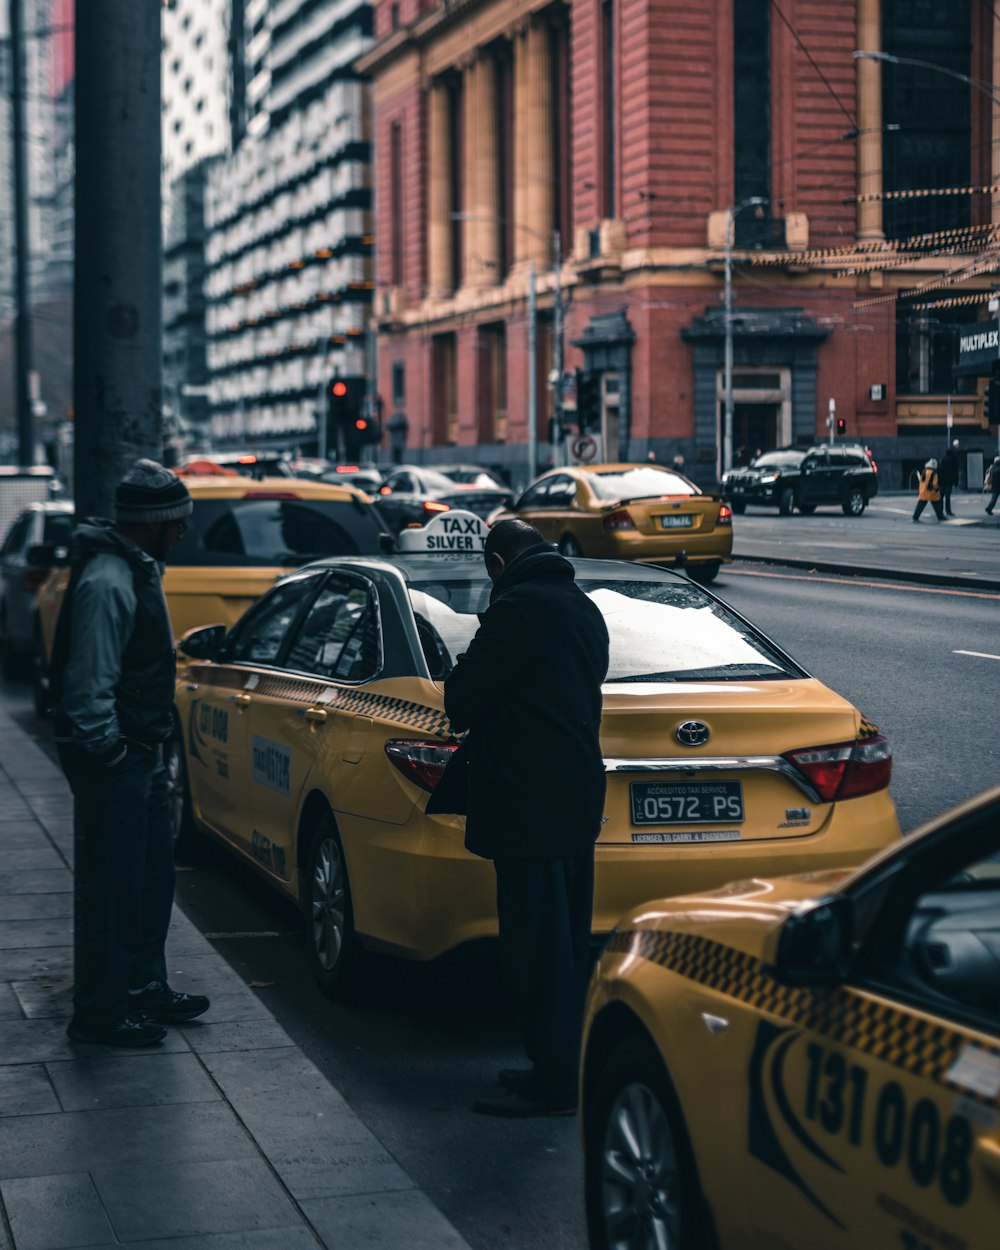 검은 트렌치 코트를 입은 사람이 노란색 택시에 서 있습니다.